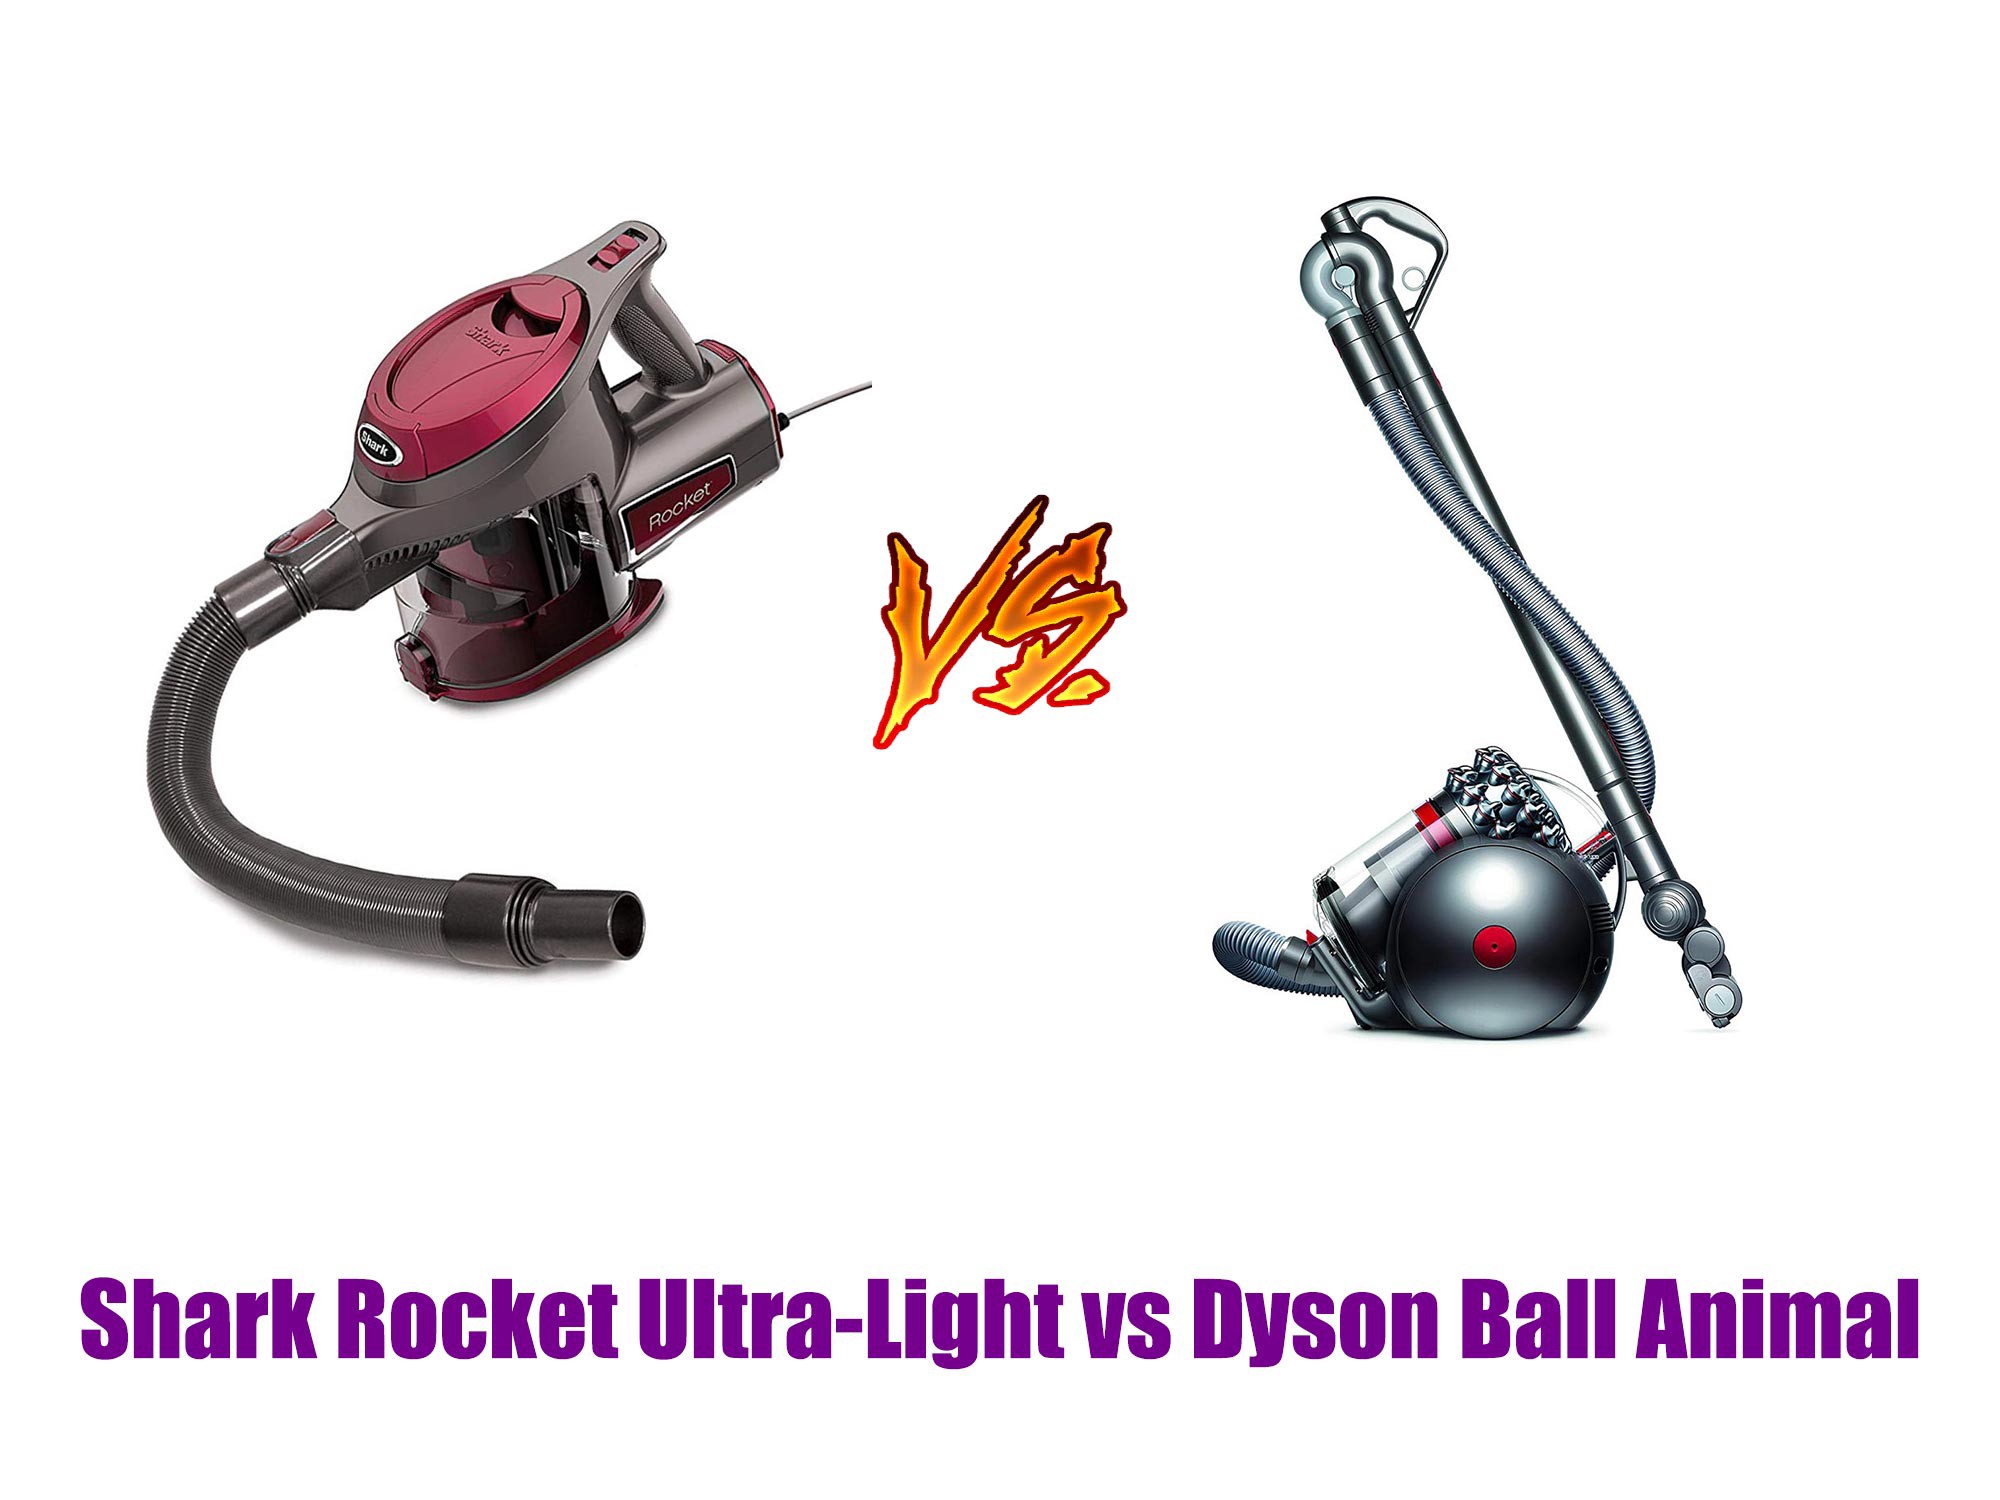 Shark Rocket Ultra-Light vs Dyson Ball Animal